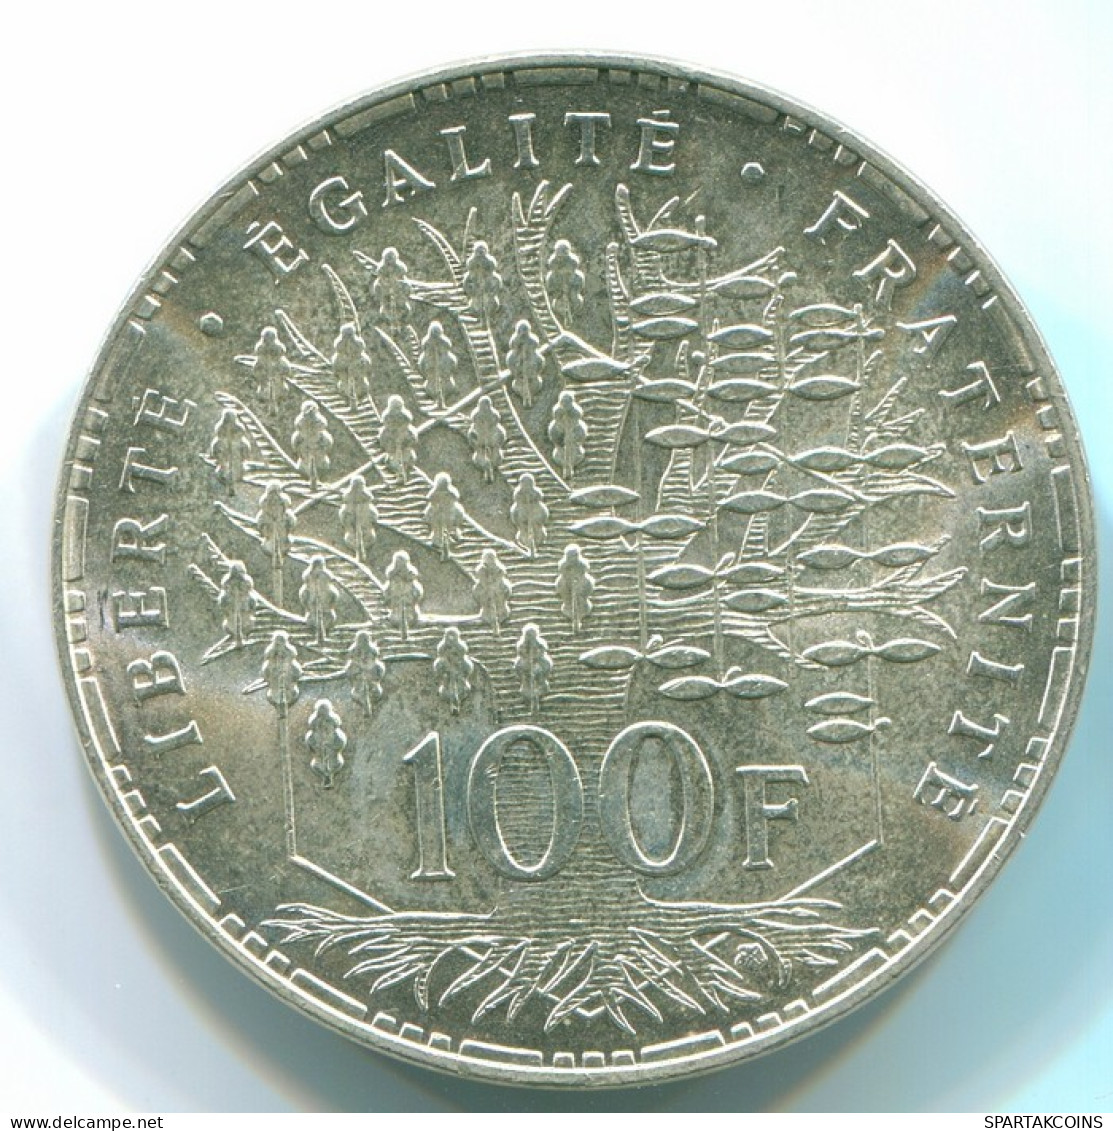 100 FRANCS 1983 FRANKREICH FRANCE Münze PANTHEON SILBER UNC #FR1025.24.D - 100 Francs